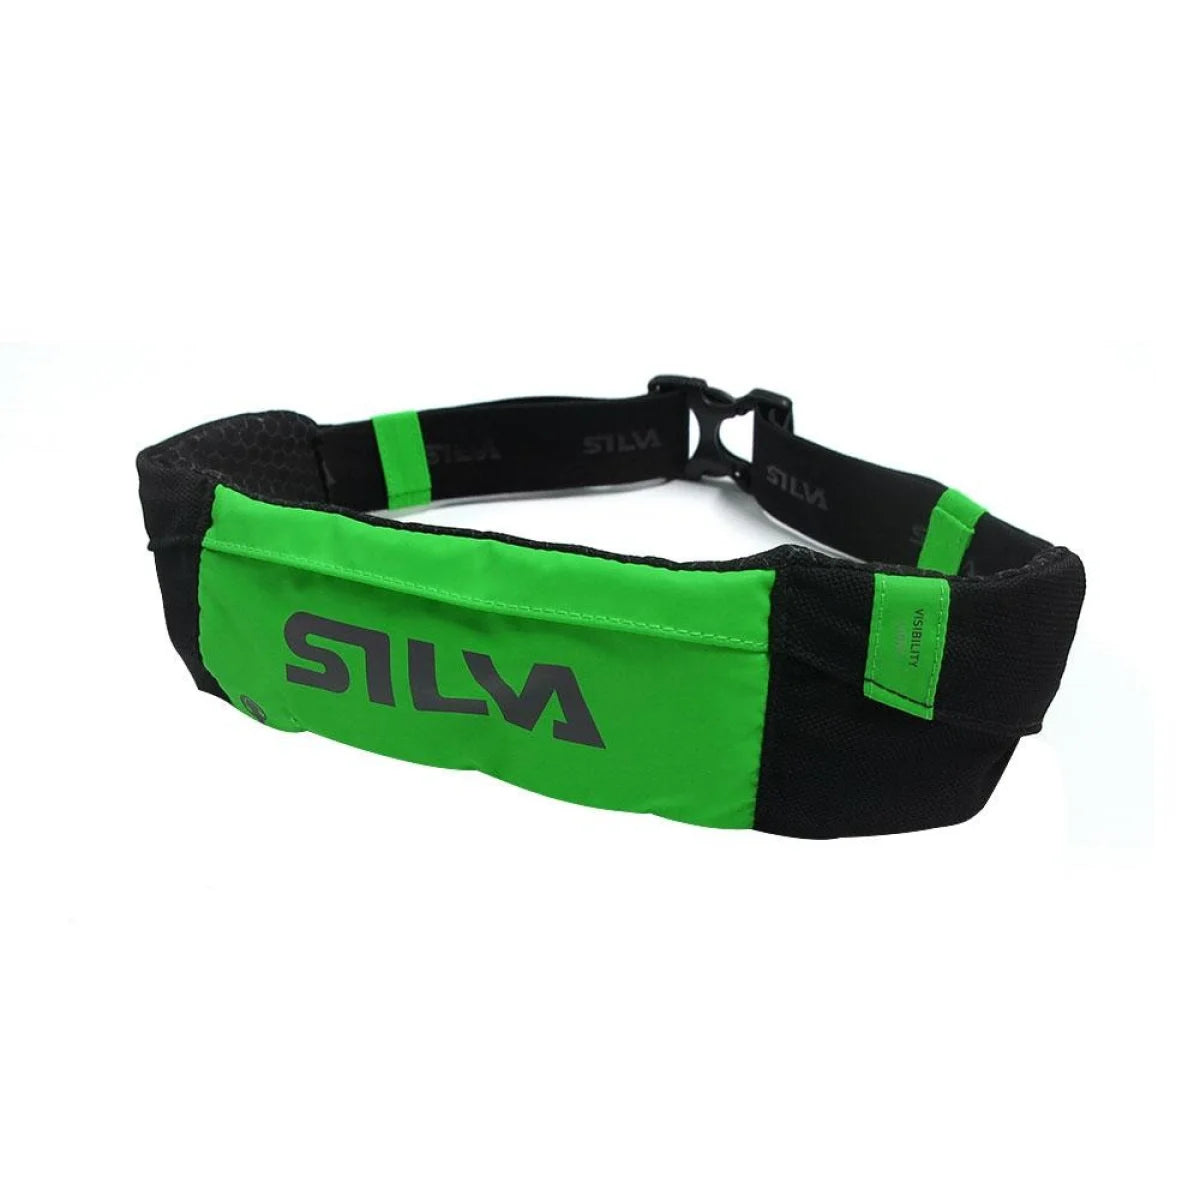 Silva Distance Run Waist Belt